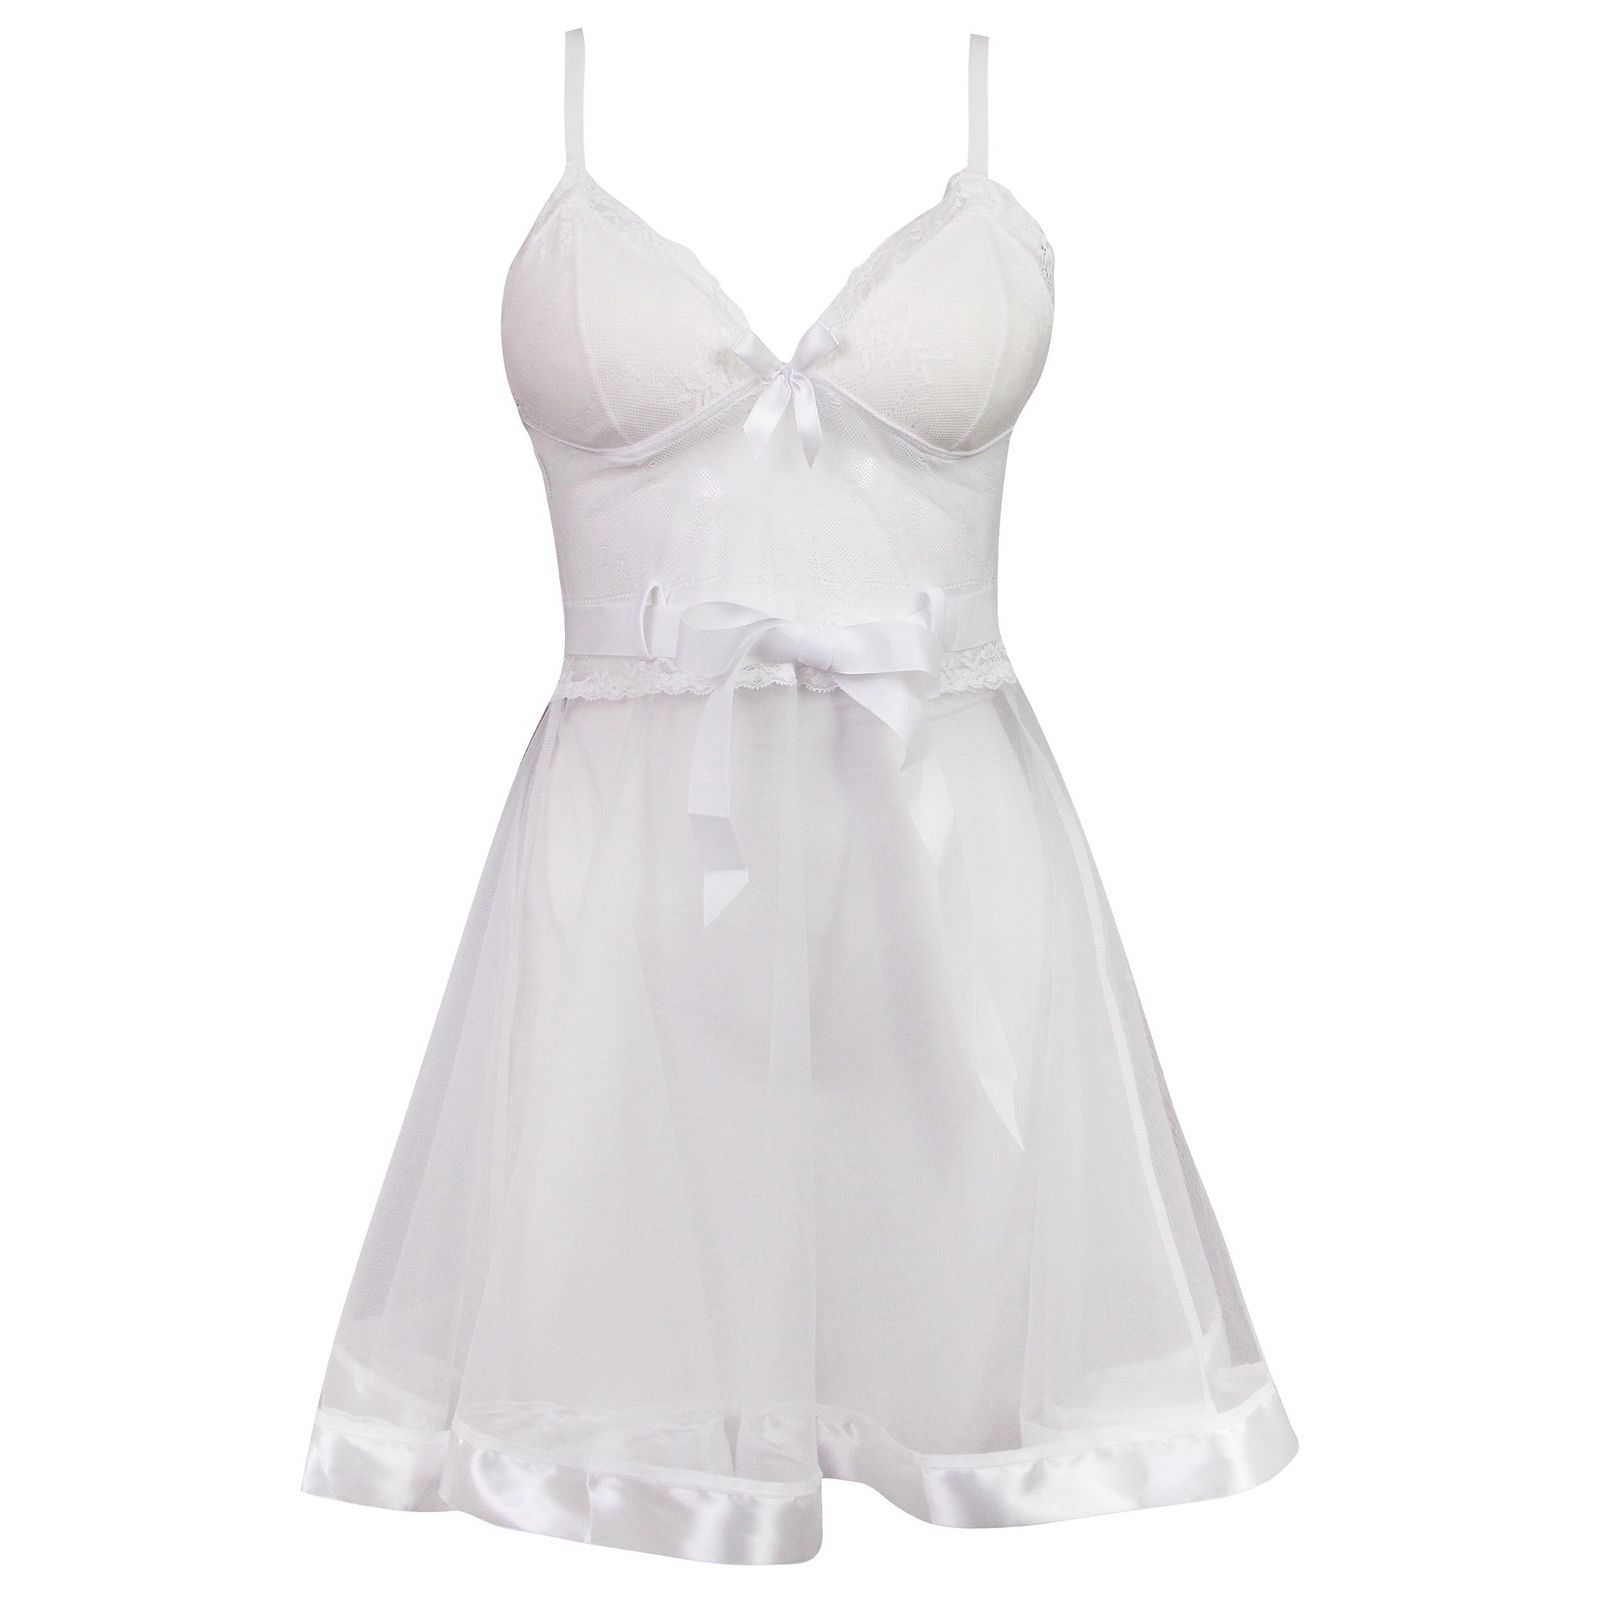 لباس خواب زنانه ماییلدا مدل گیپور گلدار کد 3685-820 رنگ سفید -  - 2